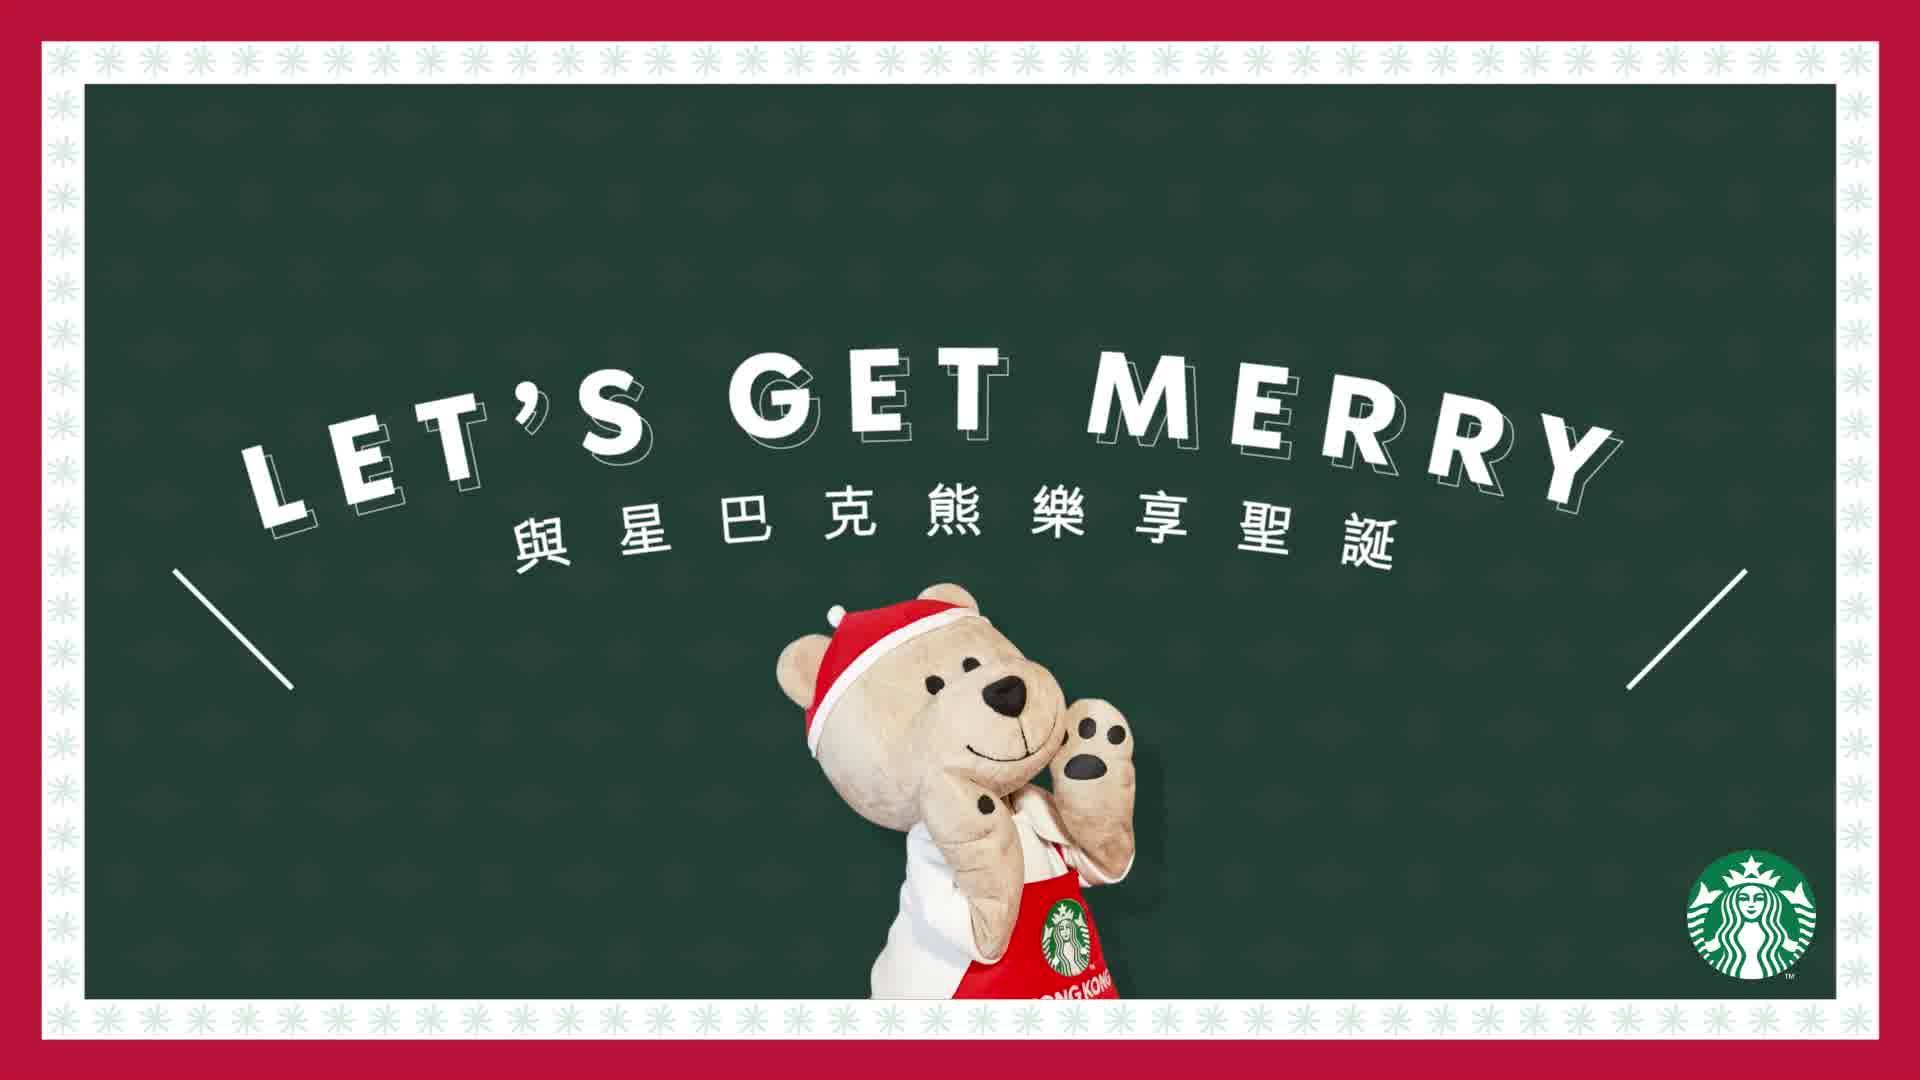 星巴克熊與薑餅人已經準備就緒，於12月為大家帶來連串驚喜，一起樂享聖誔 (Let’s get merry)！ 您準備好與星巴克熊及摯親好友一起共渡歡樂聖誕了嗎？ #香港星巴克...